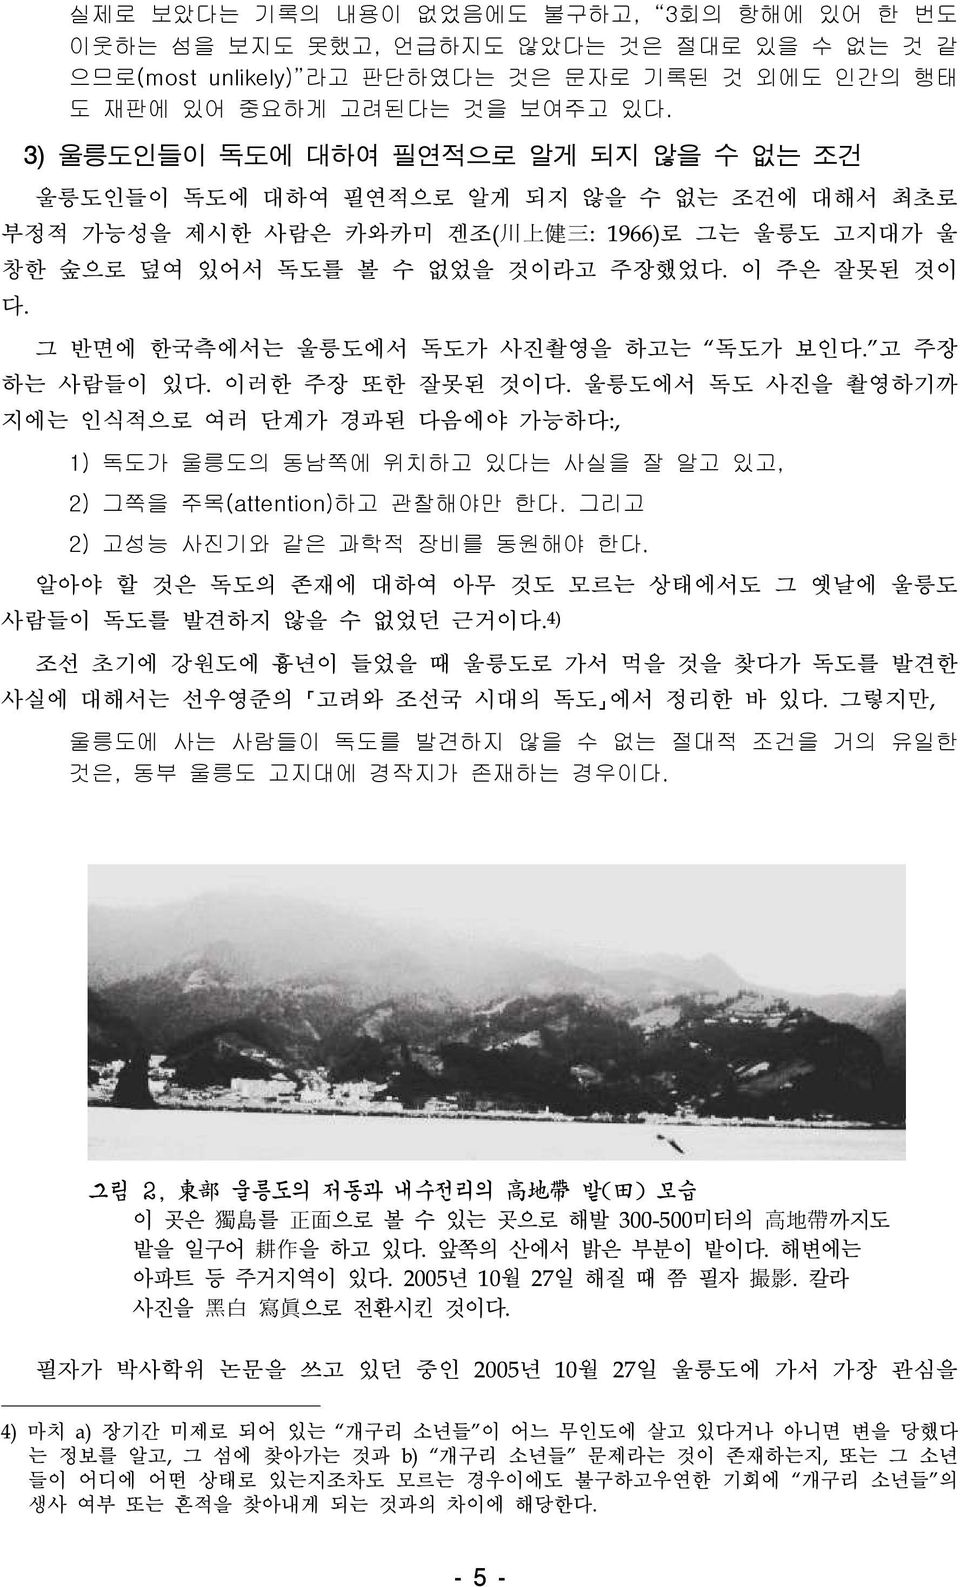 그 반면에 한국측에서는 울릉도에서 독도가 사진촬영을 하고는 독도가 보인다. 고 주장 하는 사람들이 있다. 이러한 주장 또한 잘못된 것이다.